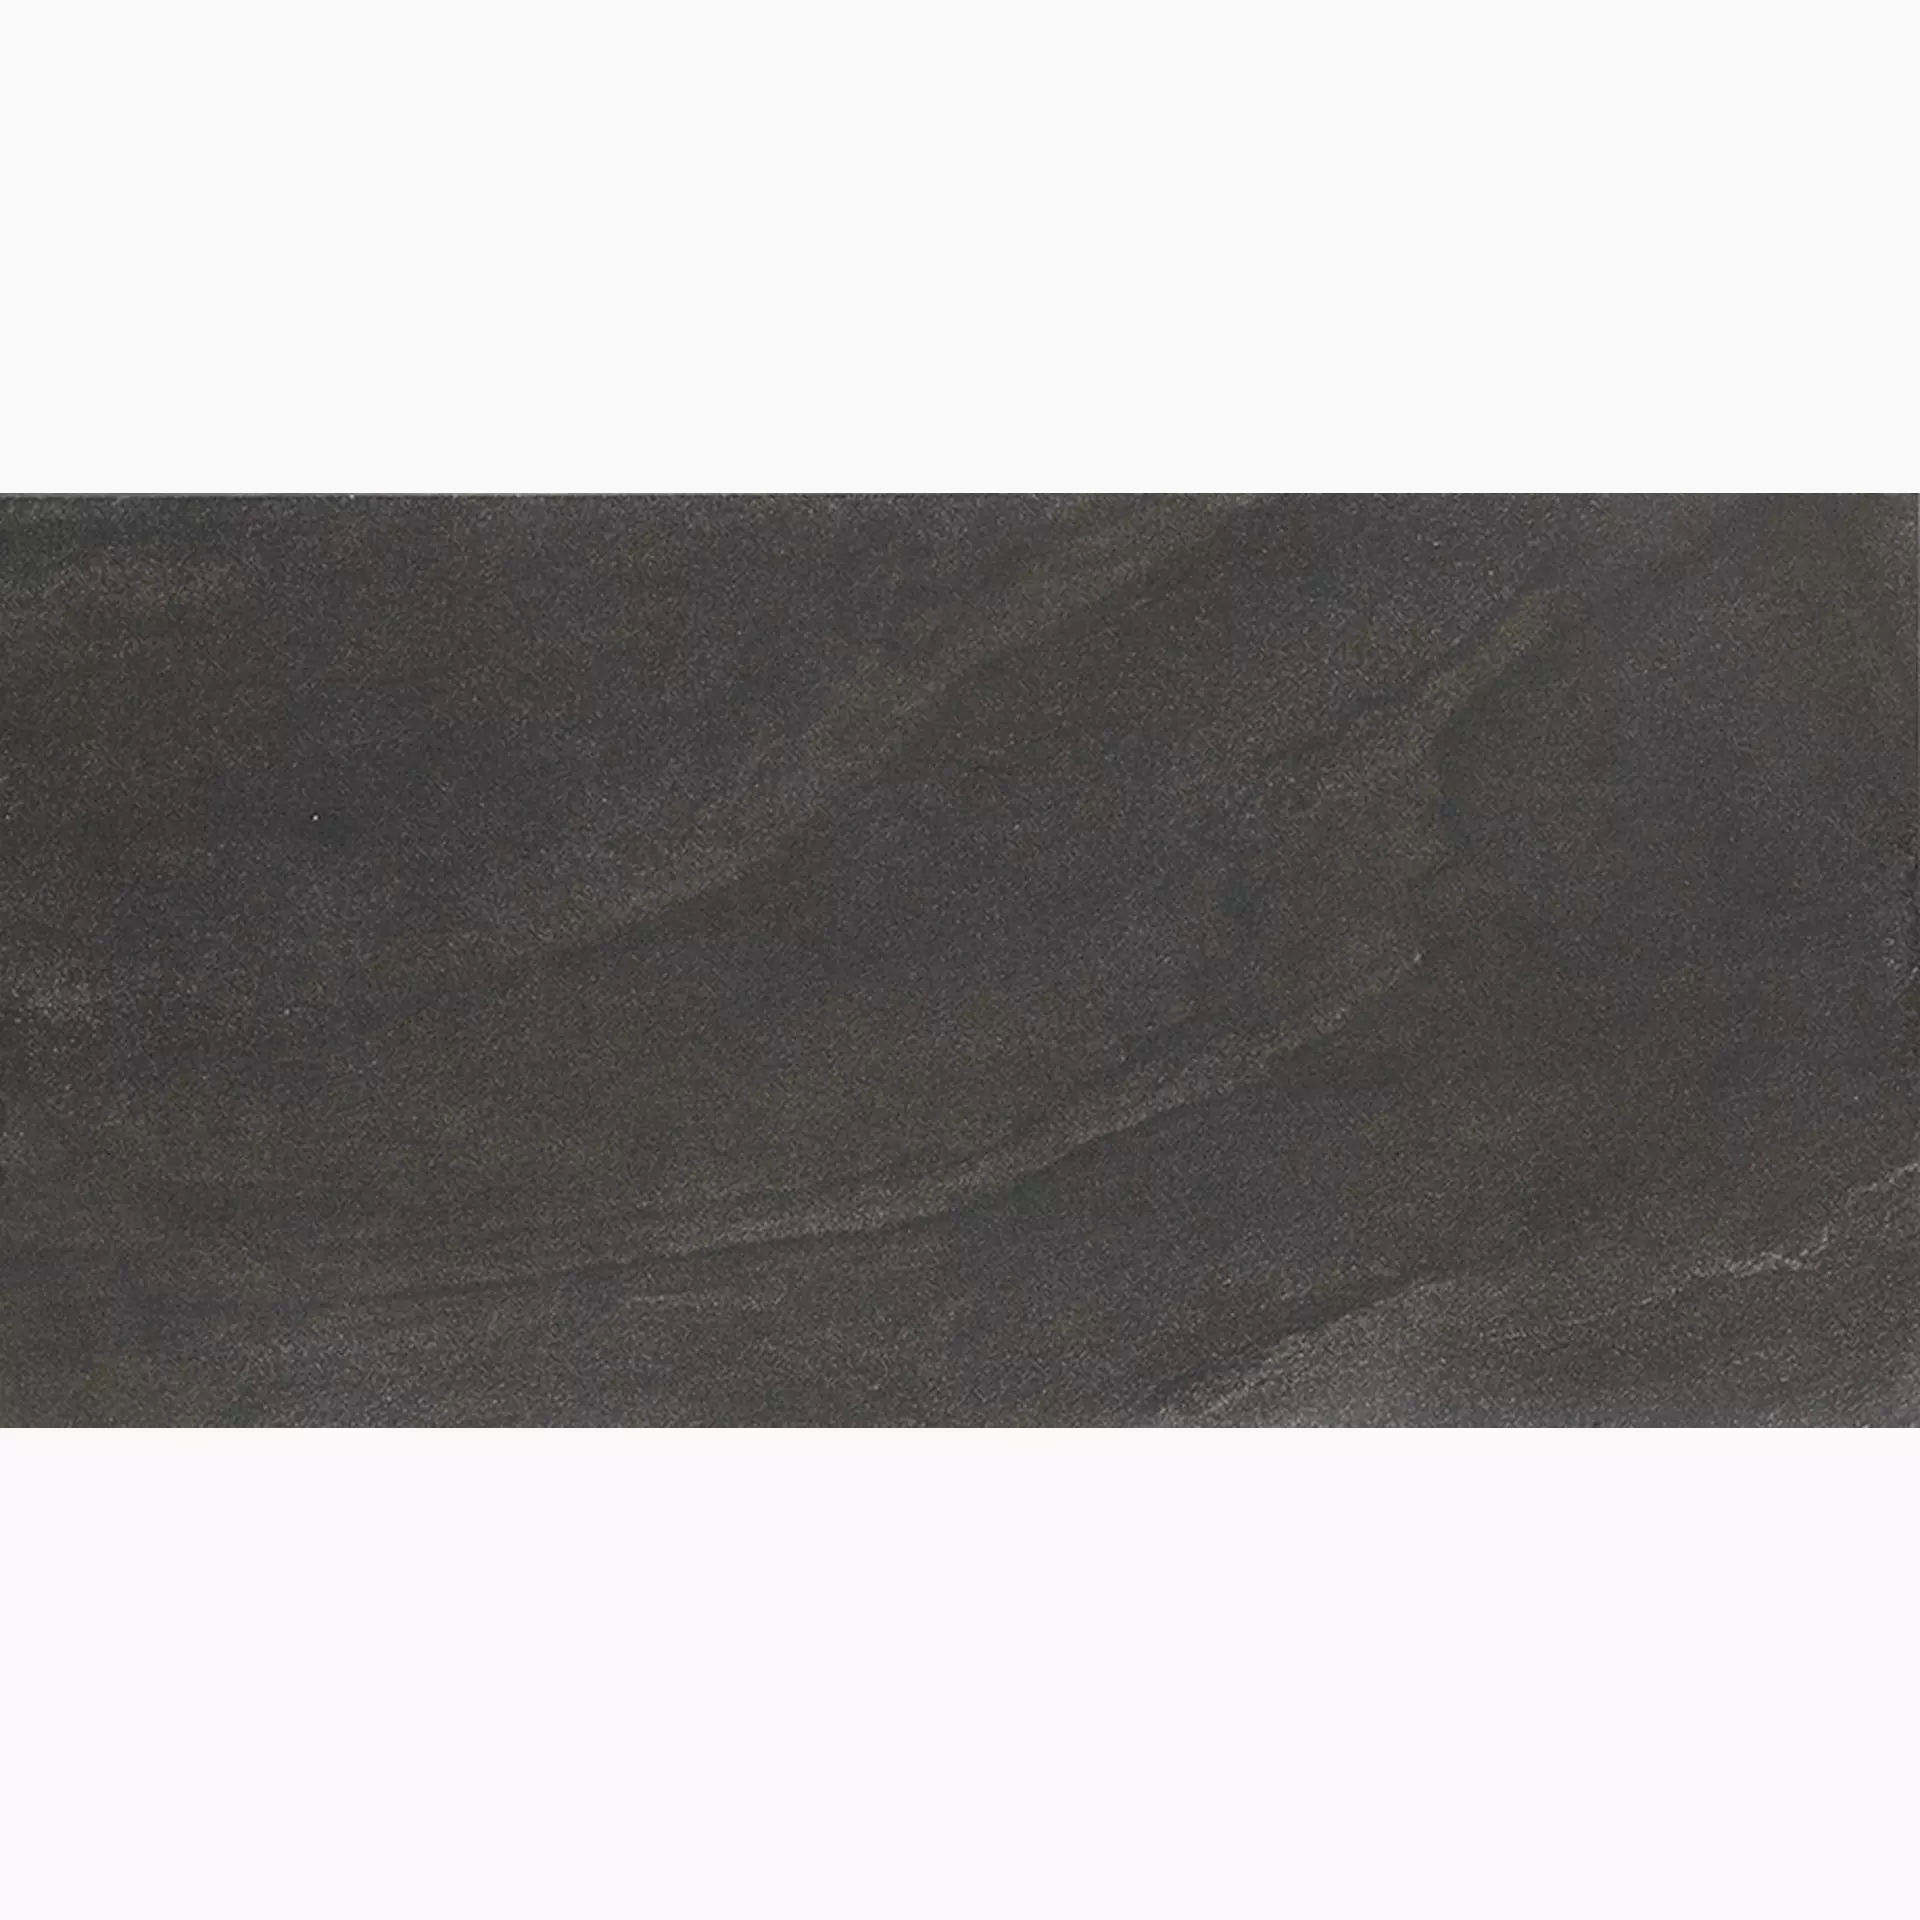 Ergon Stone Project Black Lappato Controfalda E6L0 60x120cm rectified 9,5mm